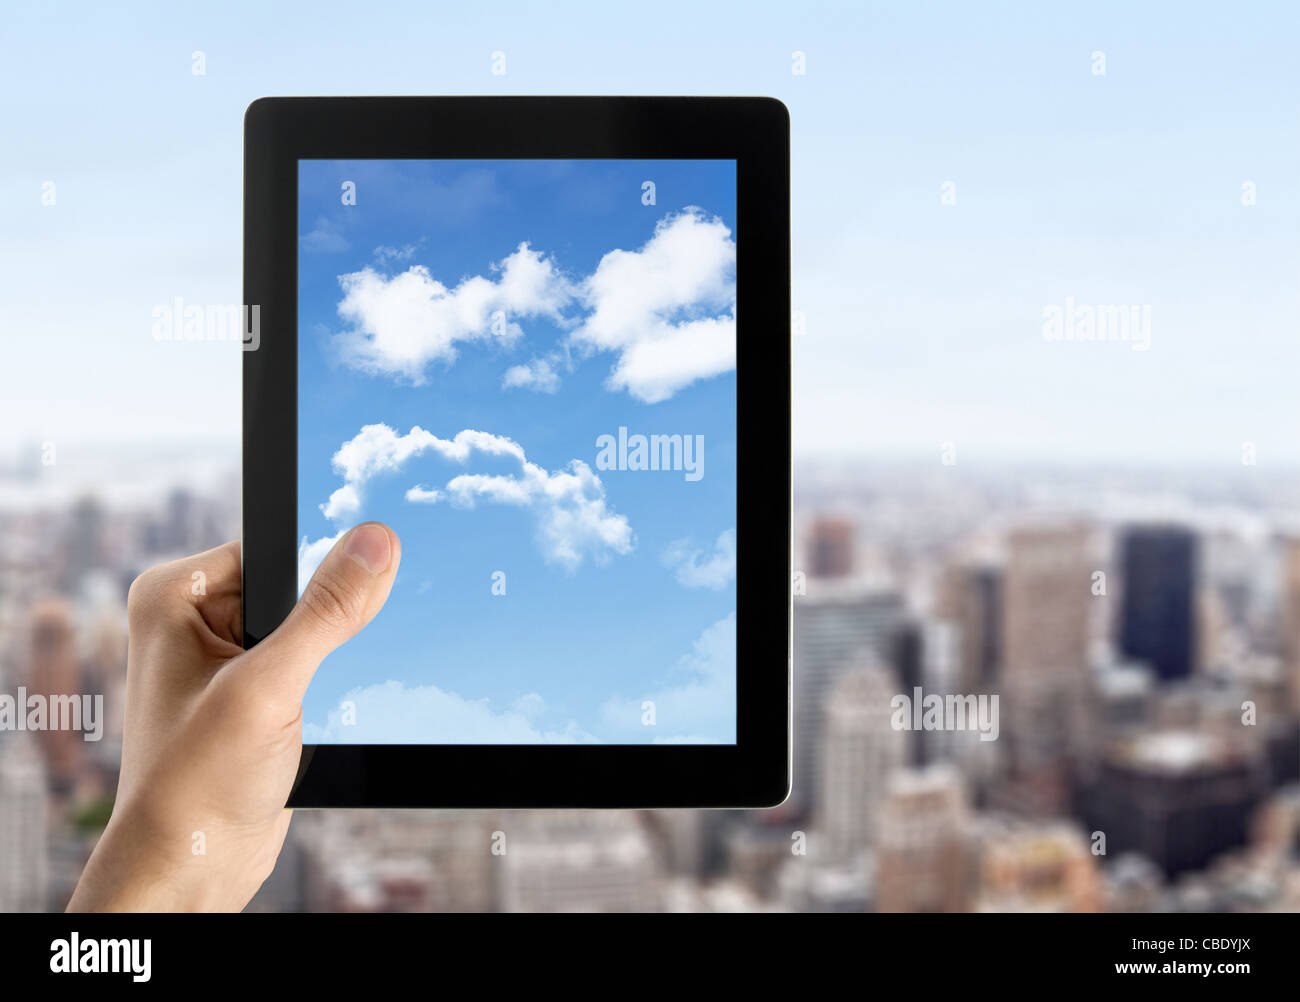 L'uomo le mani sono holding tavoletta digitale con cloudscape sullo schermo. Concetto di immagine sul cloud computing tema. Paesaggio urbano sfocate con s Foto Stock